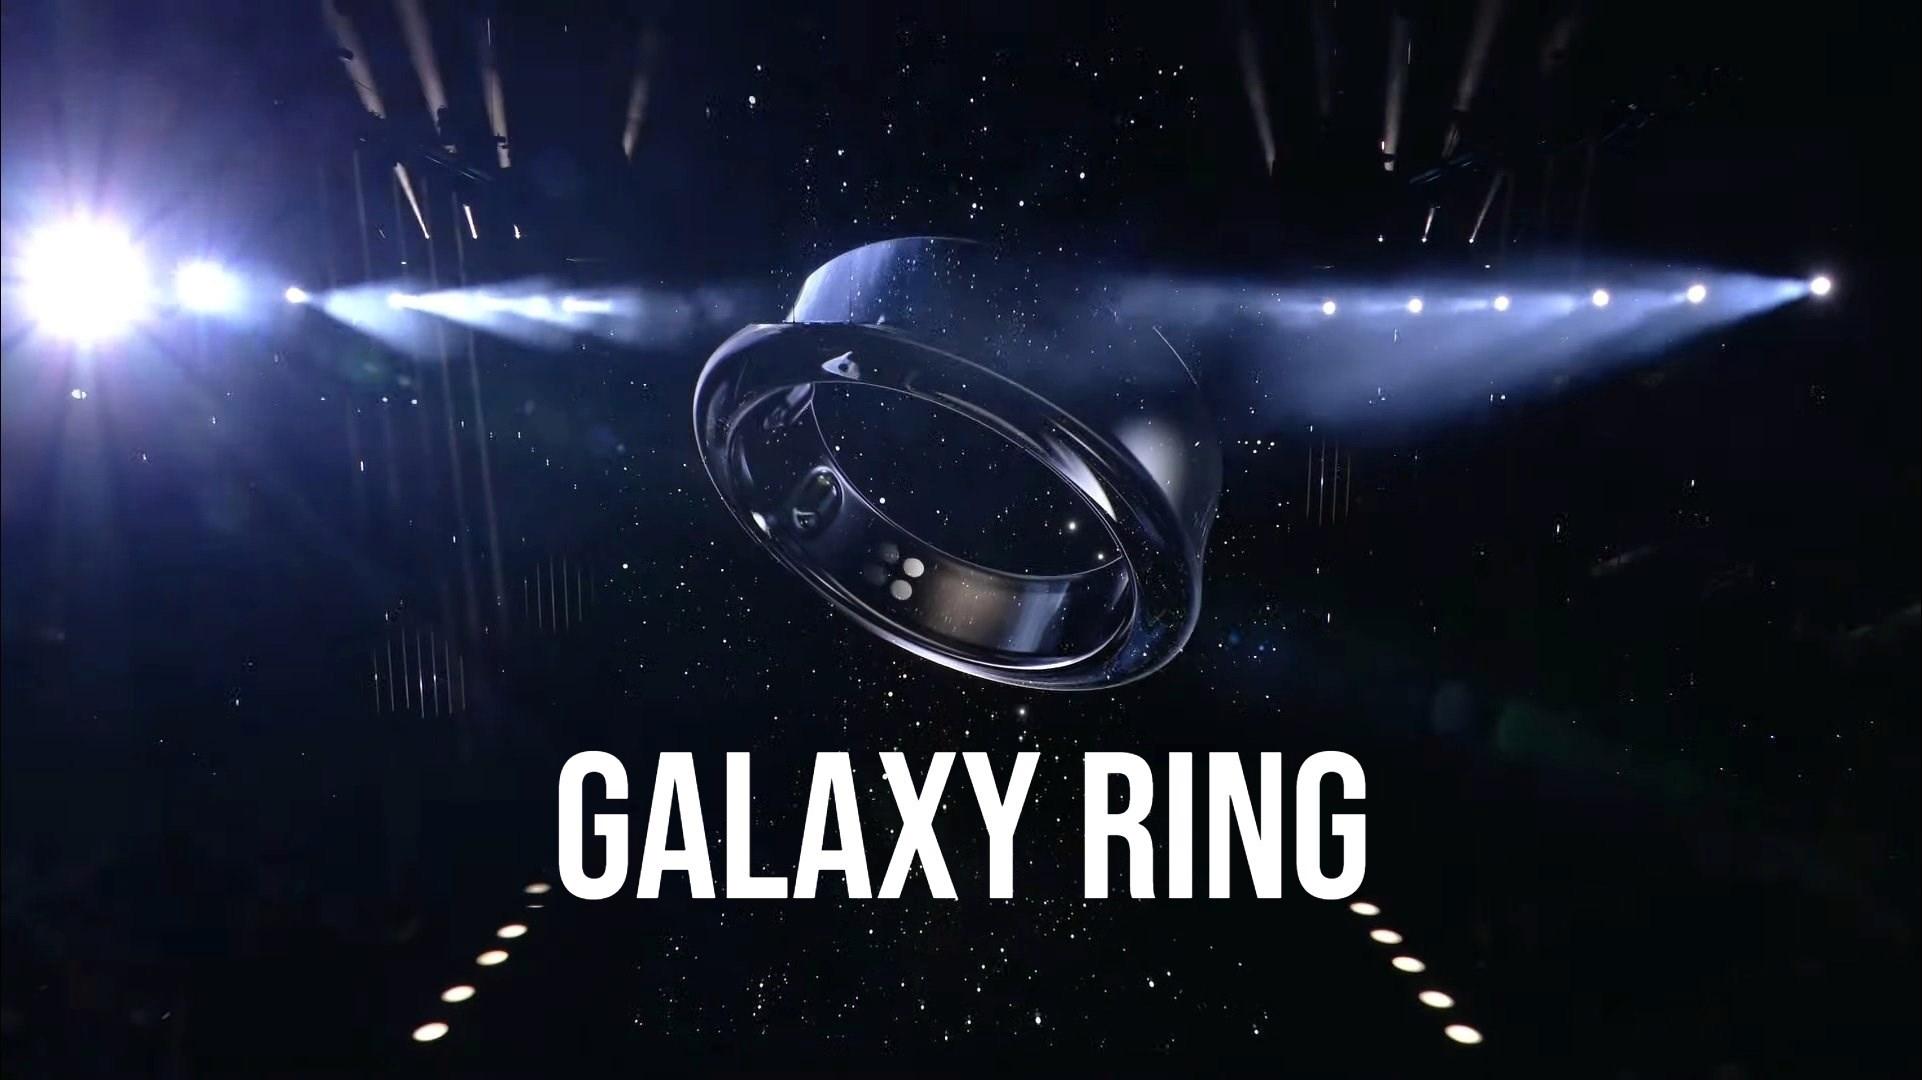 Galaxy Ring, giyilebilir teknolojilerde yeni bir devrim başlatabilir